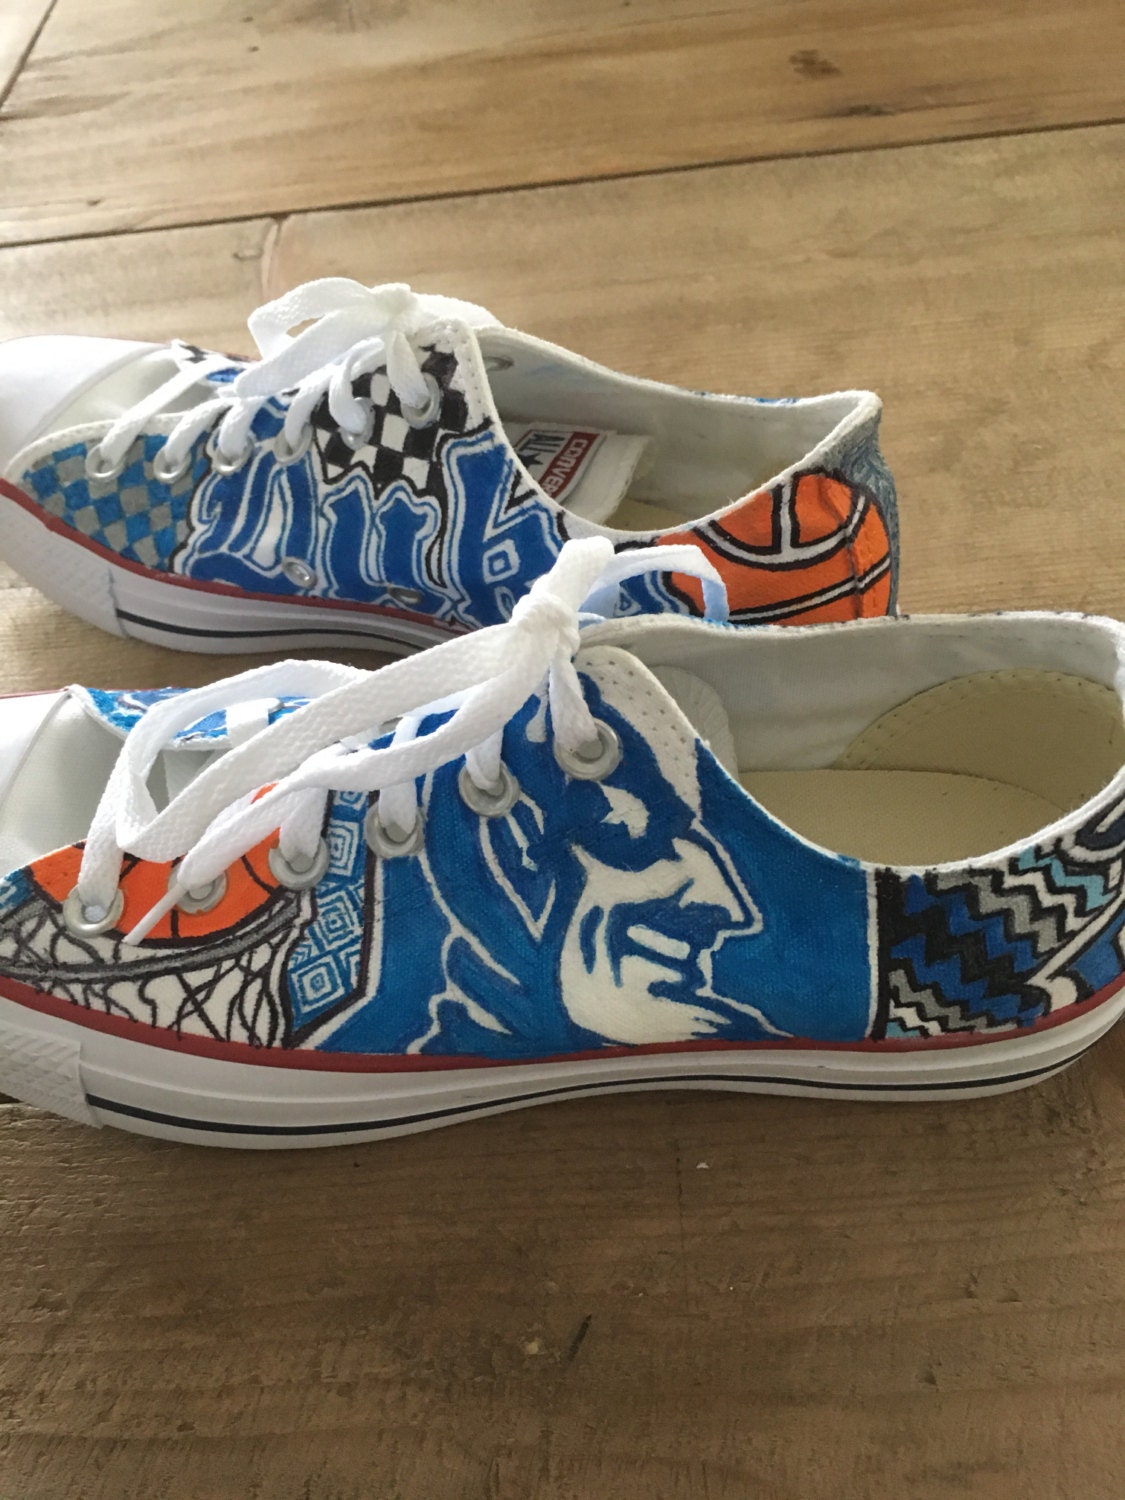 Duke University Hand Painted Custom Sneakers | Etsy